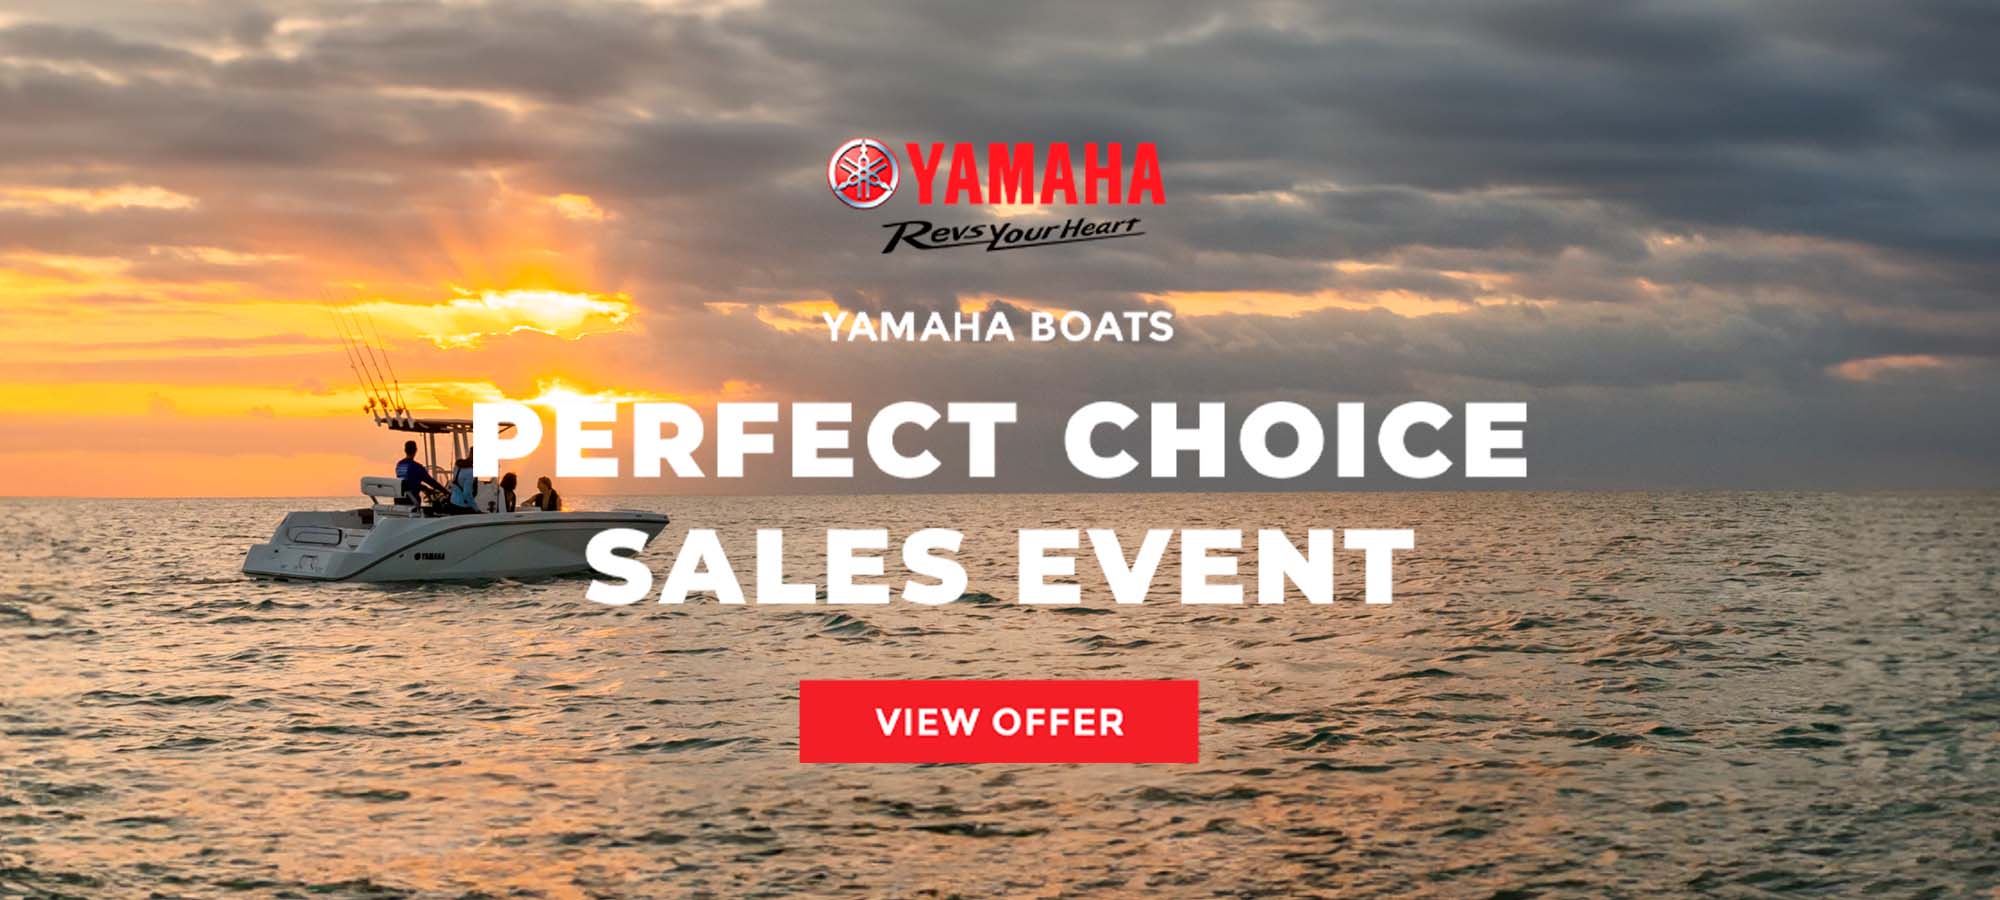 Yamaha US - Boats - PERFECT CHOICE SALES EVENT at Edwards Motorsports & RVs